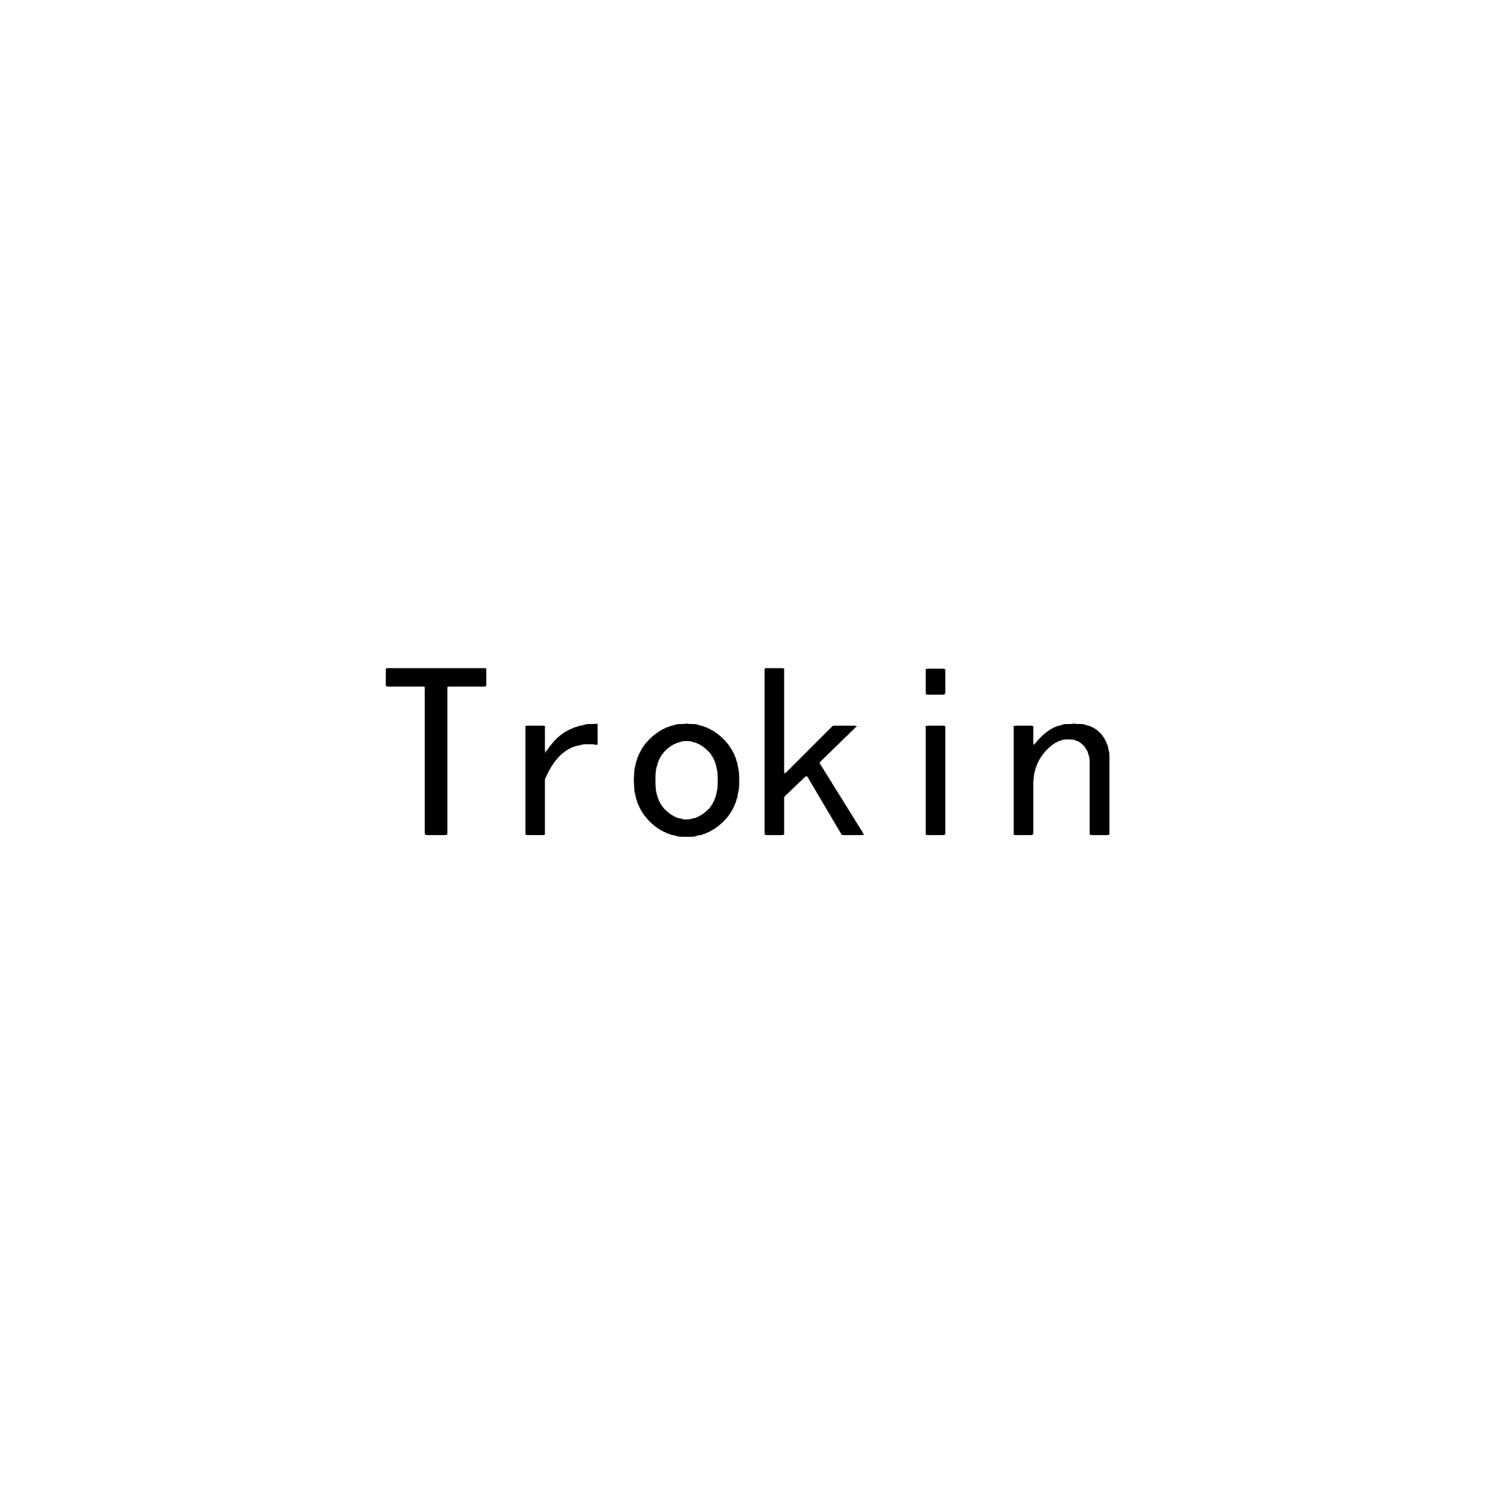 TROKIN